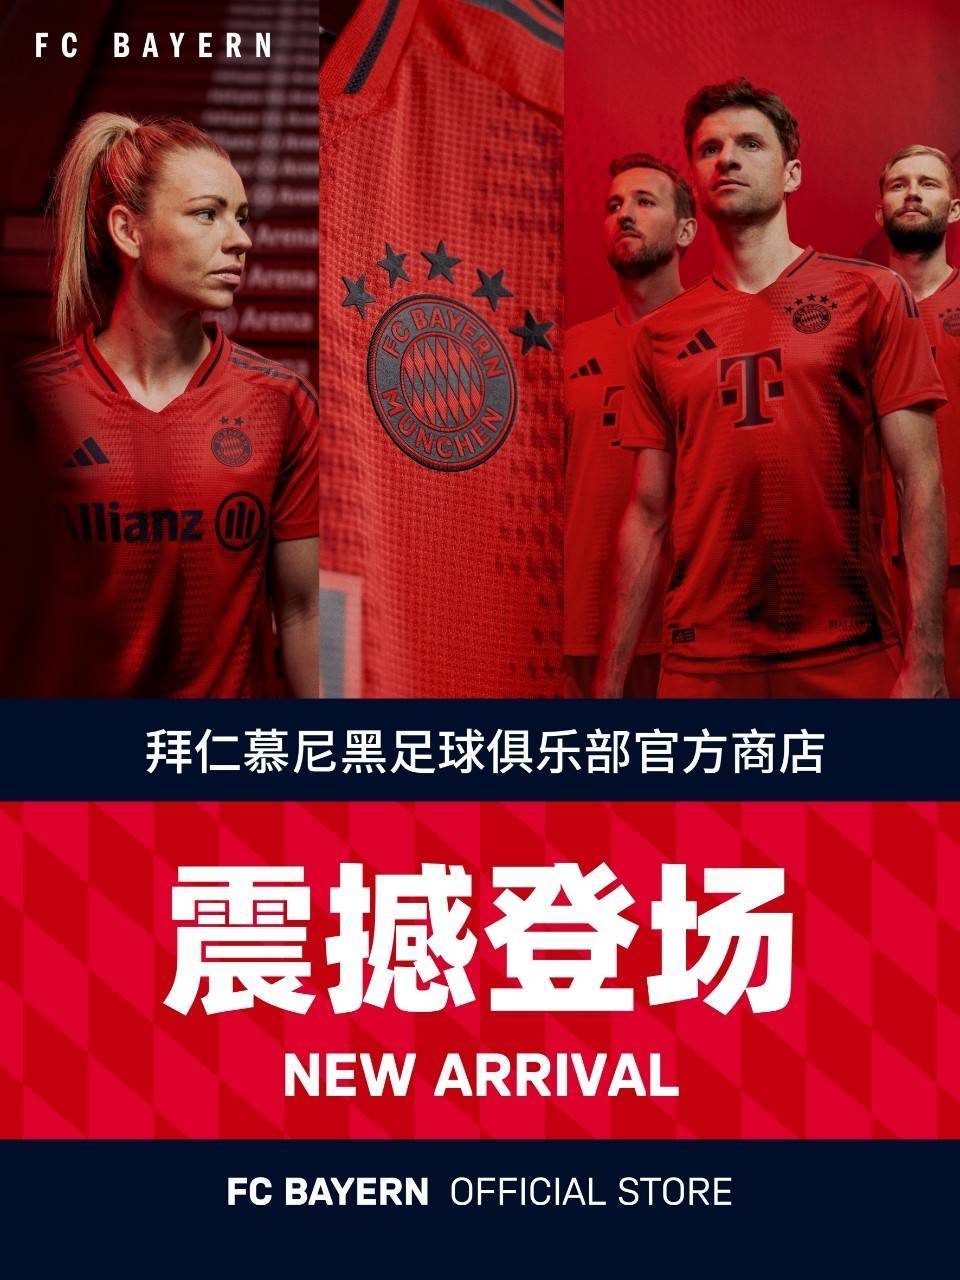 聚星动力成为拜仁慕尼黑足球俱乐部电商及零售合作伙伴，拜仁官方商店全新登场